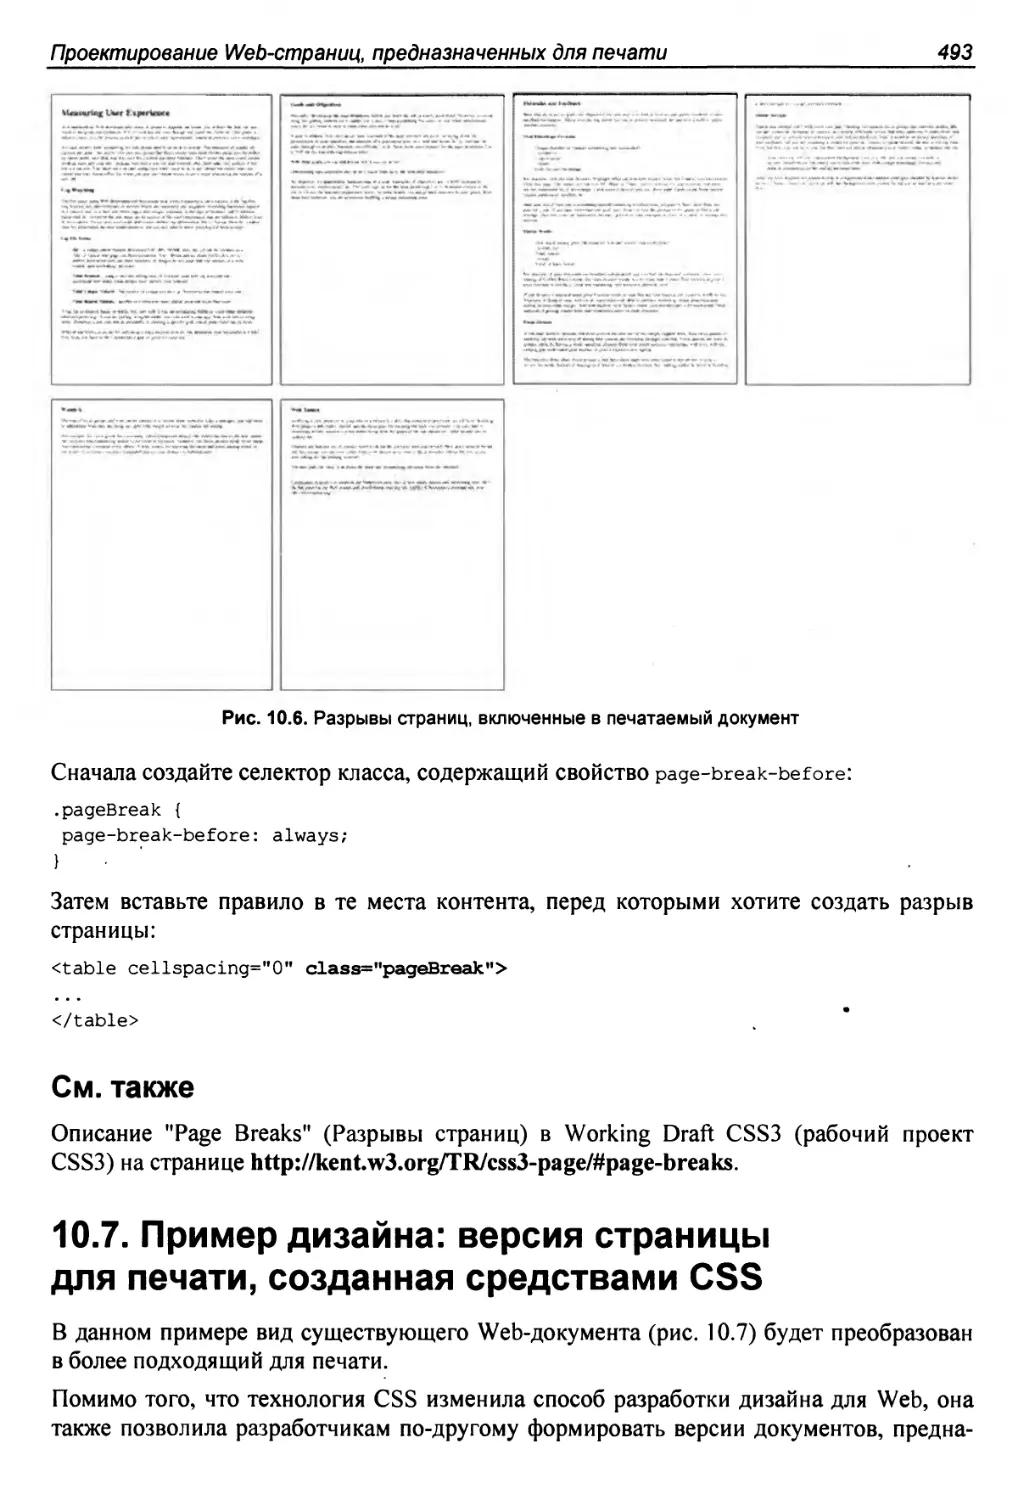 10.7. Пример дизайна: версия страницы для печати, созданная средствами CSS